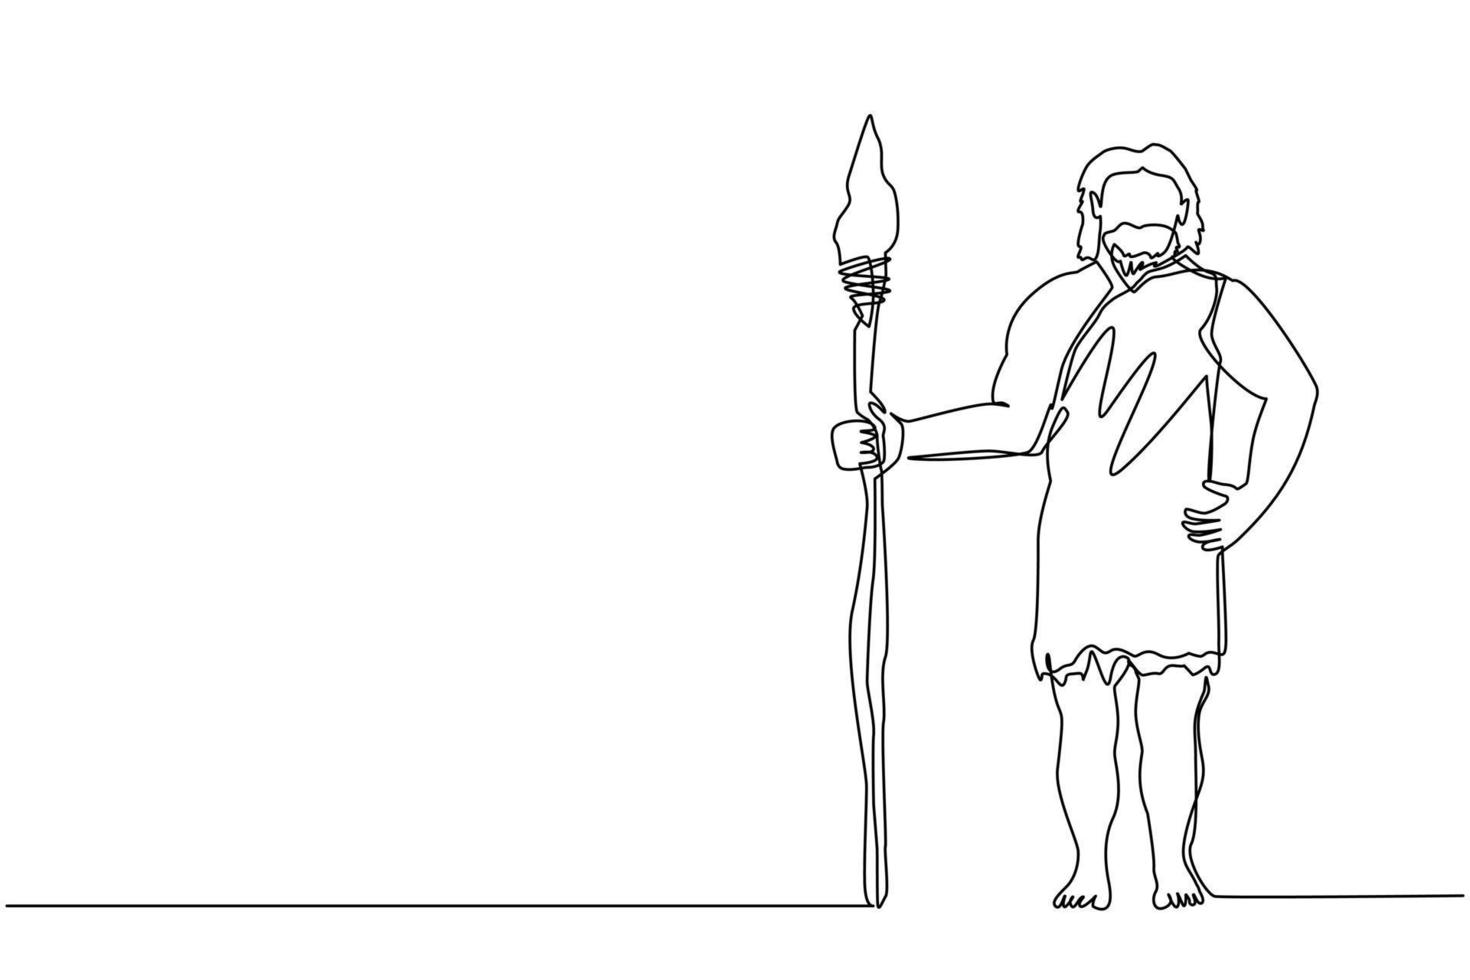 kontinuierliche eine Linie, die einen primitiven archaischen Mann zeichnet, der Kleidung aus Tierhaut trägt und einen Speer hält. Frühmensch, Höhlenmensch, Krieger oder Jäger aus der Steinzeit. einzeiliges zeichnen design vektorgrafik vektor